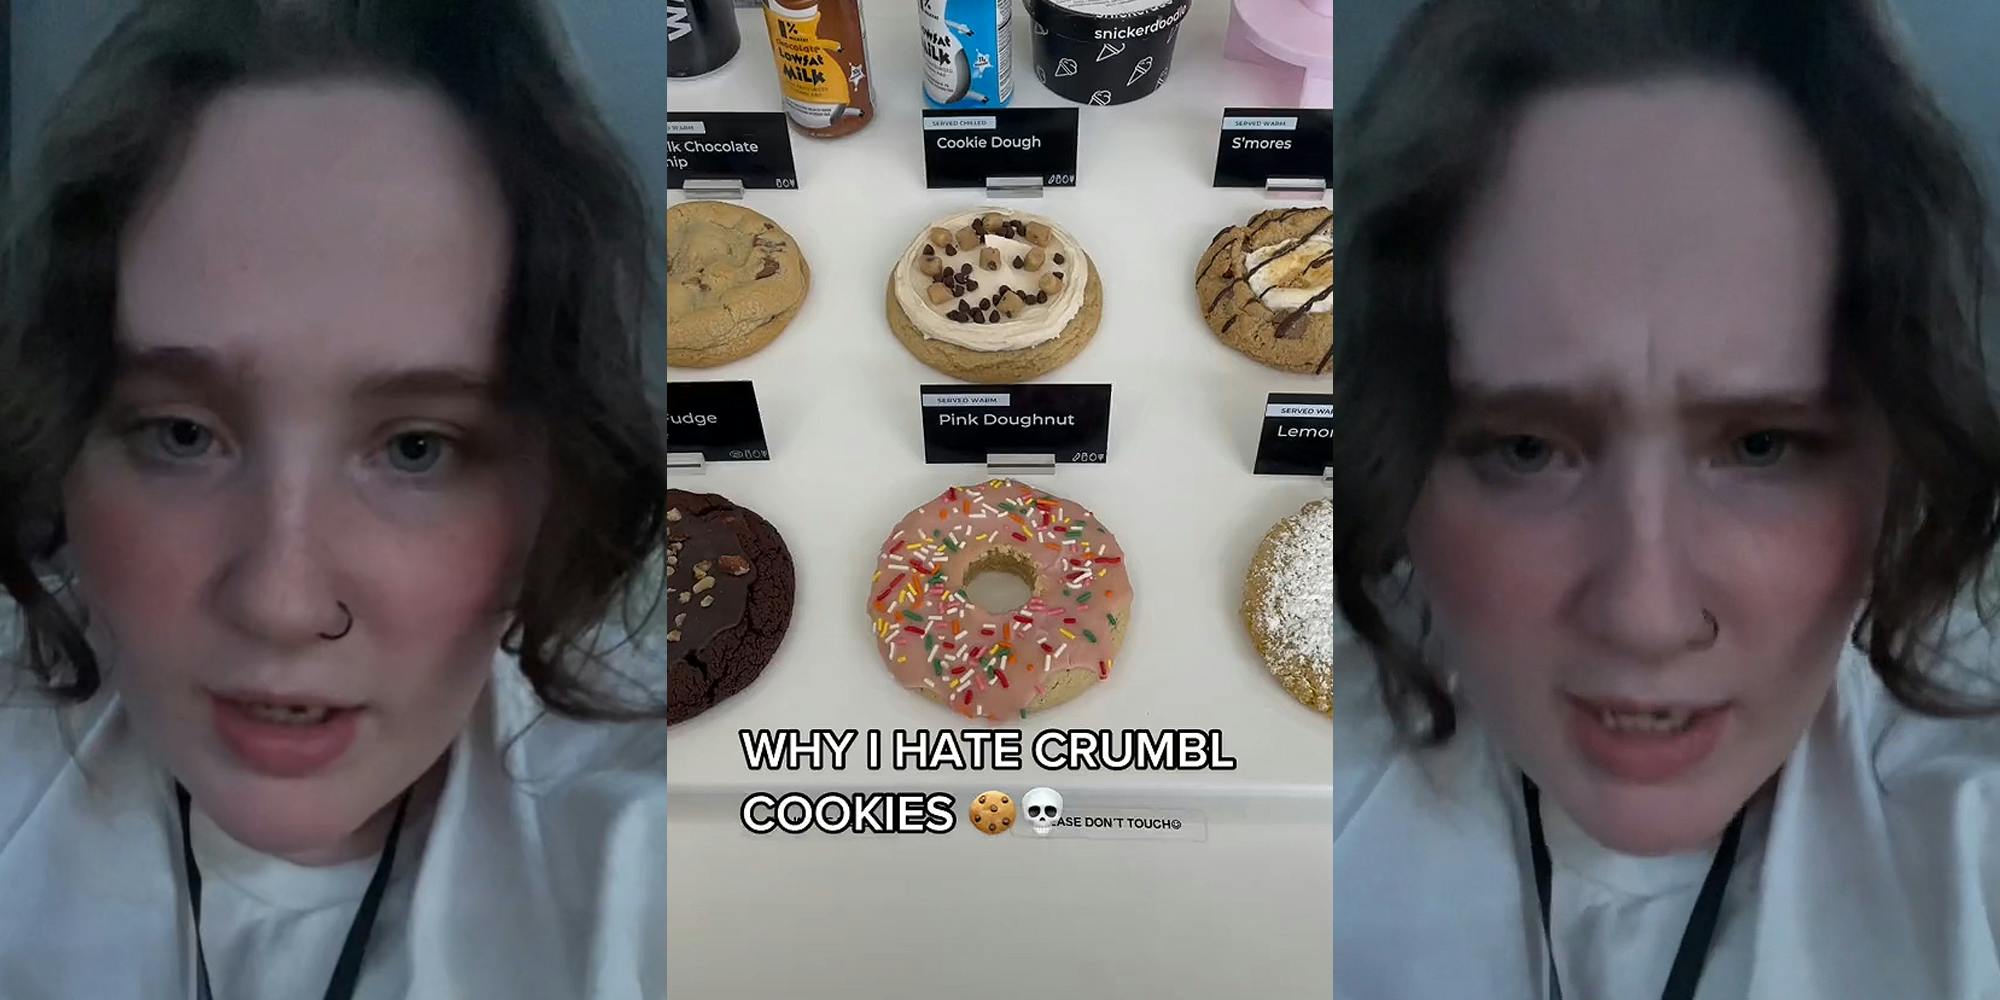 woman speaking (l) Crumbl Cookies cookies on display caption "WHY I HATE CRUMBL COOKIES" (c) woman speaking (r)